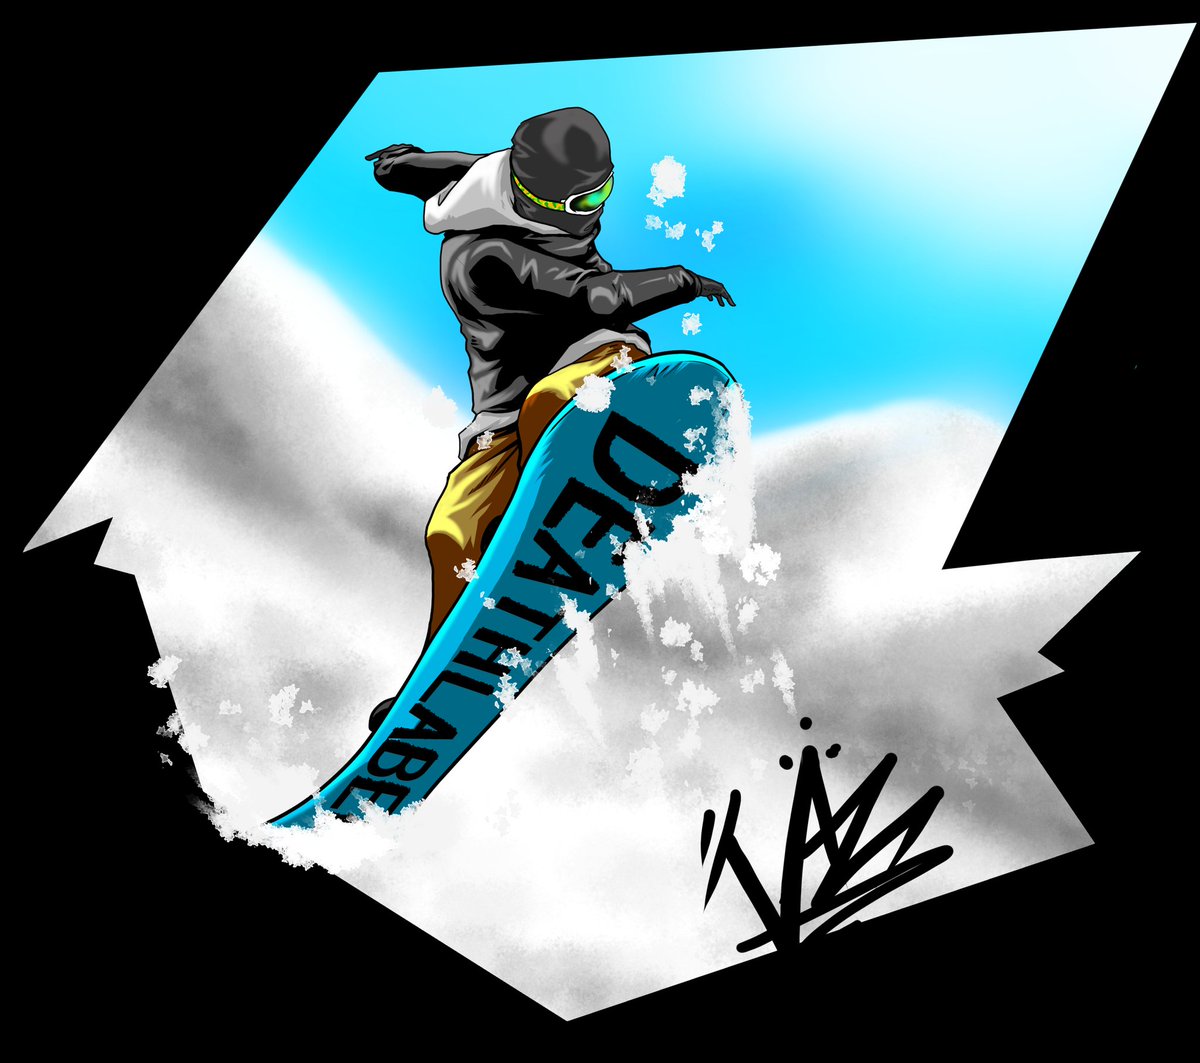 青木 伴イラストレーター あんよチャン 作者 Auf Twitter スノーボードイラスト 板ギャン上げ 技名不明 スノボの季節が来ますねー 今年こそは綺麗にノーリー360を回せるように頑張りたいと思います スノボ スノーボード イラスト Snowboarding